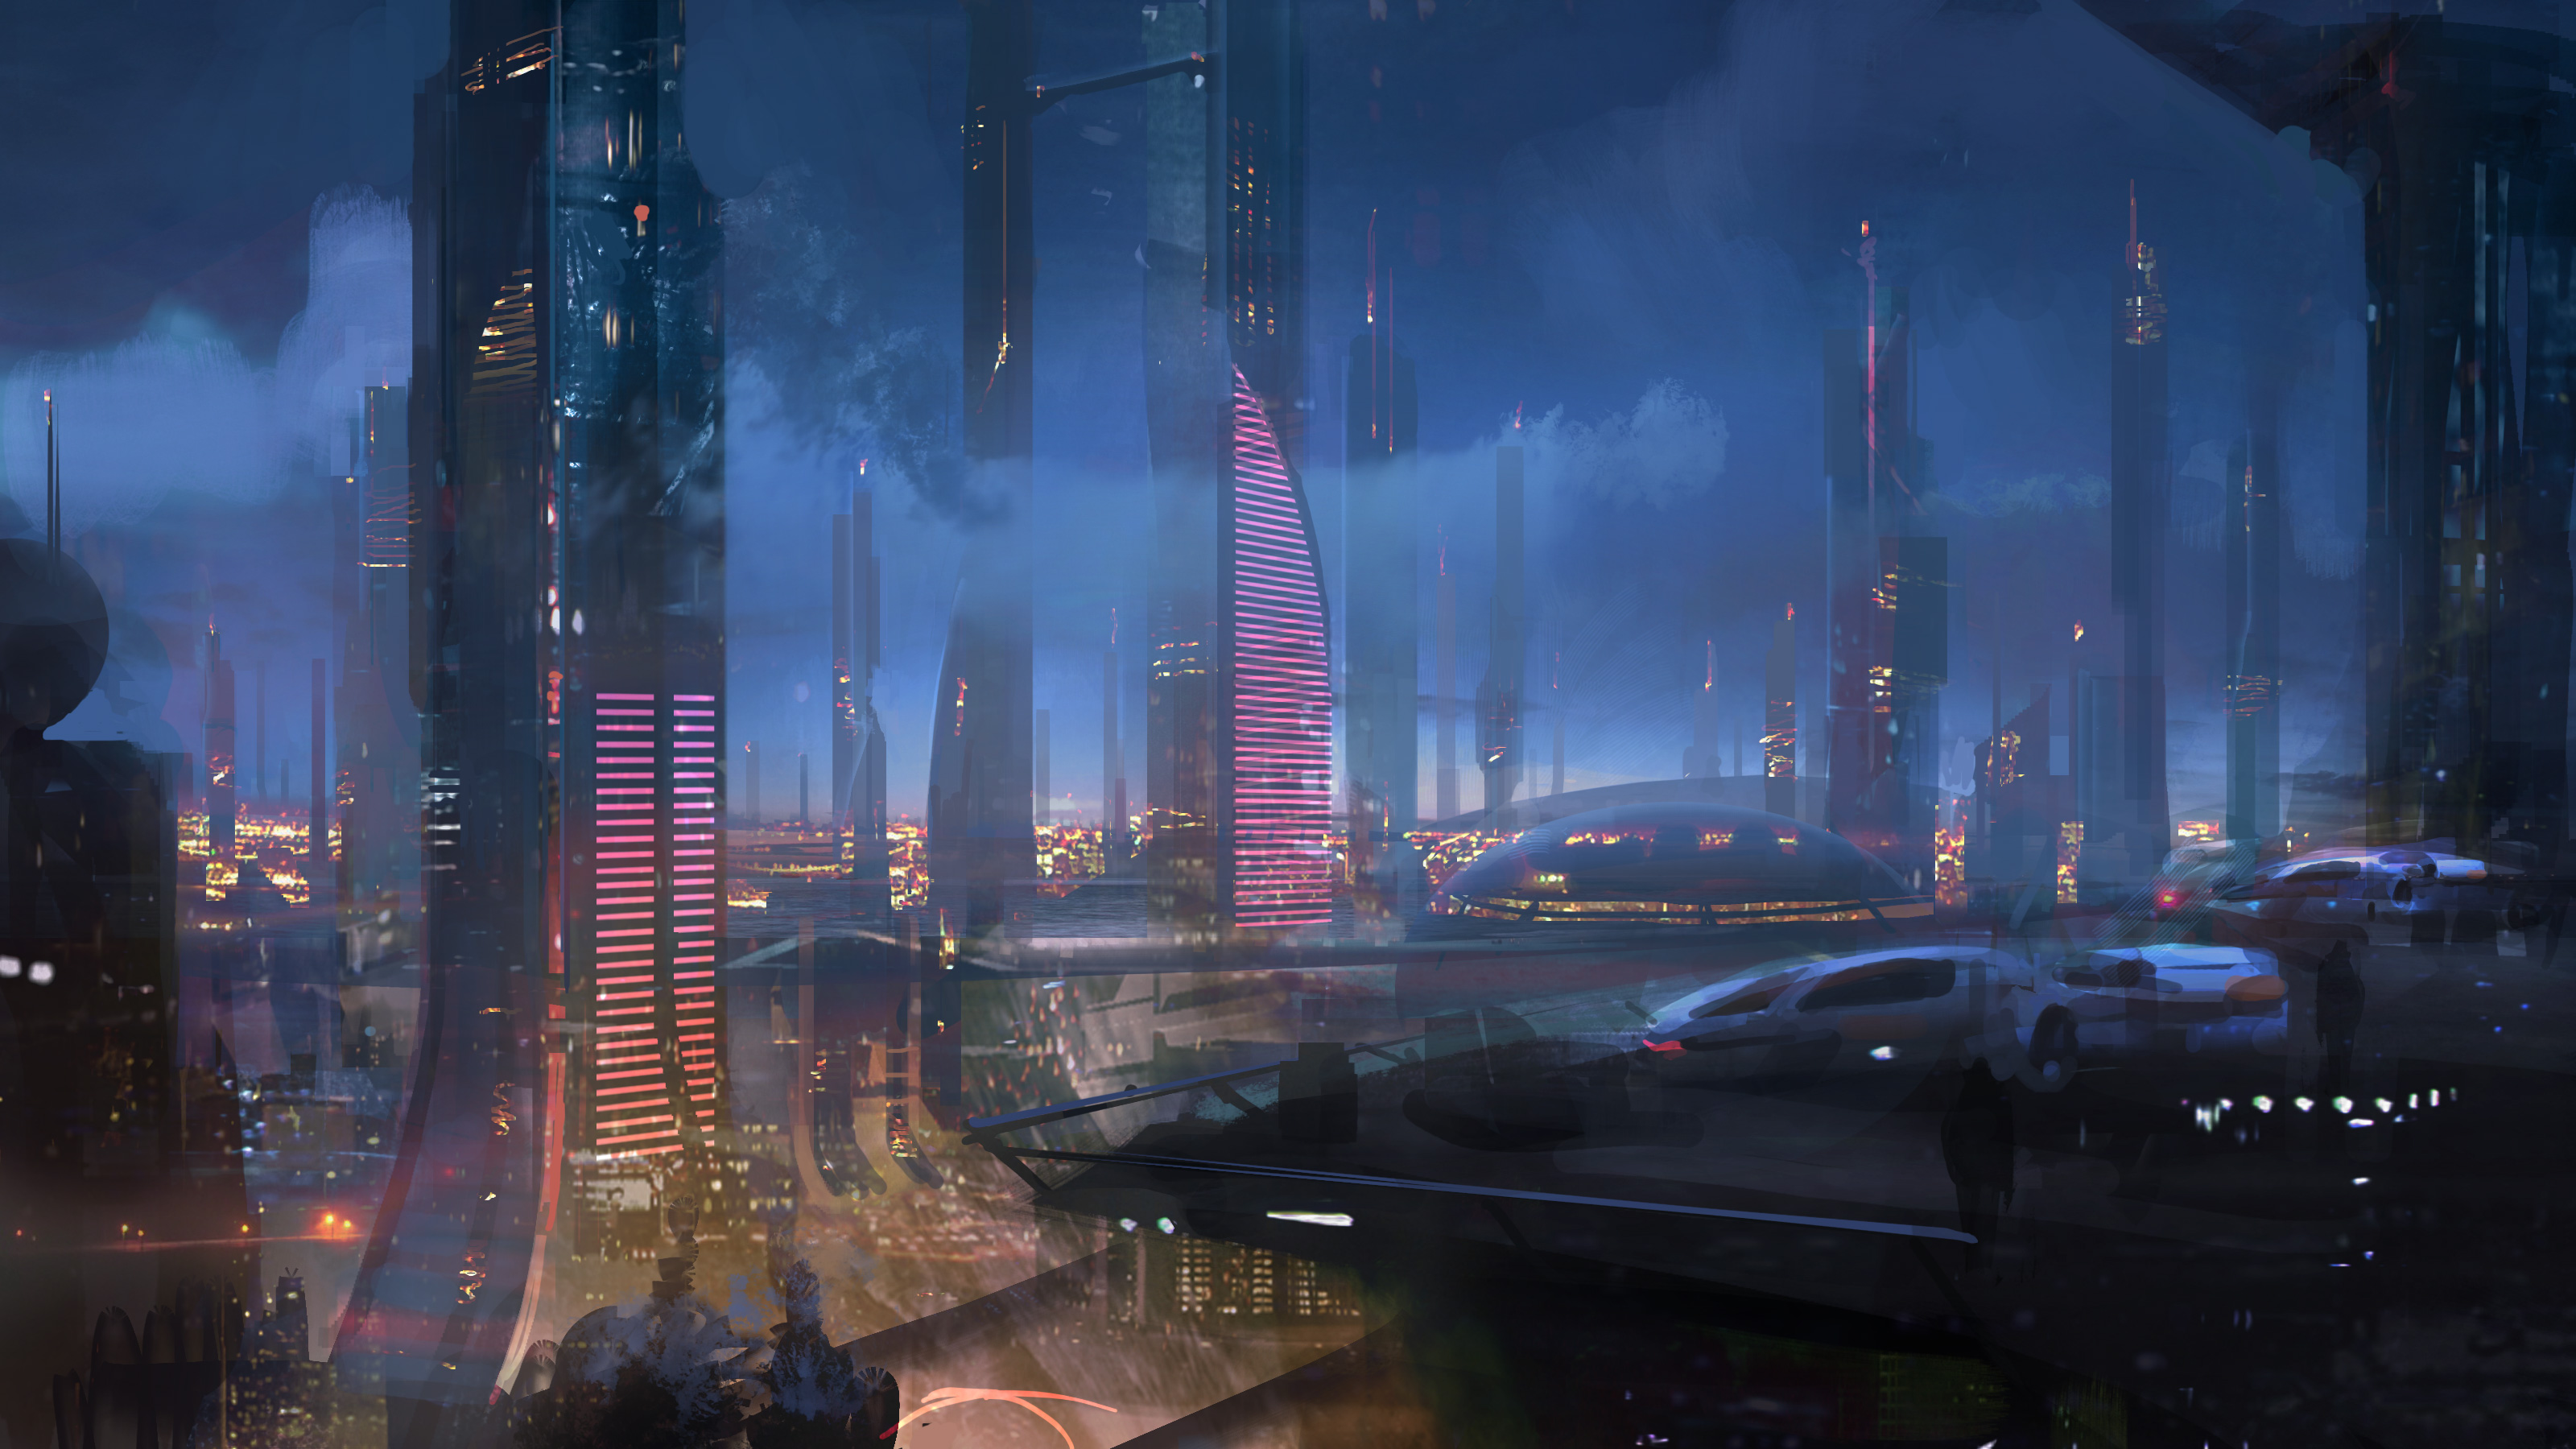 Mass Effect - Mass Effect 2 World , HD Wallpaper & Backgrounds